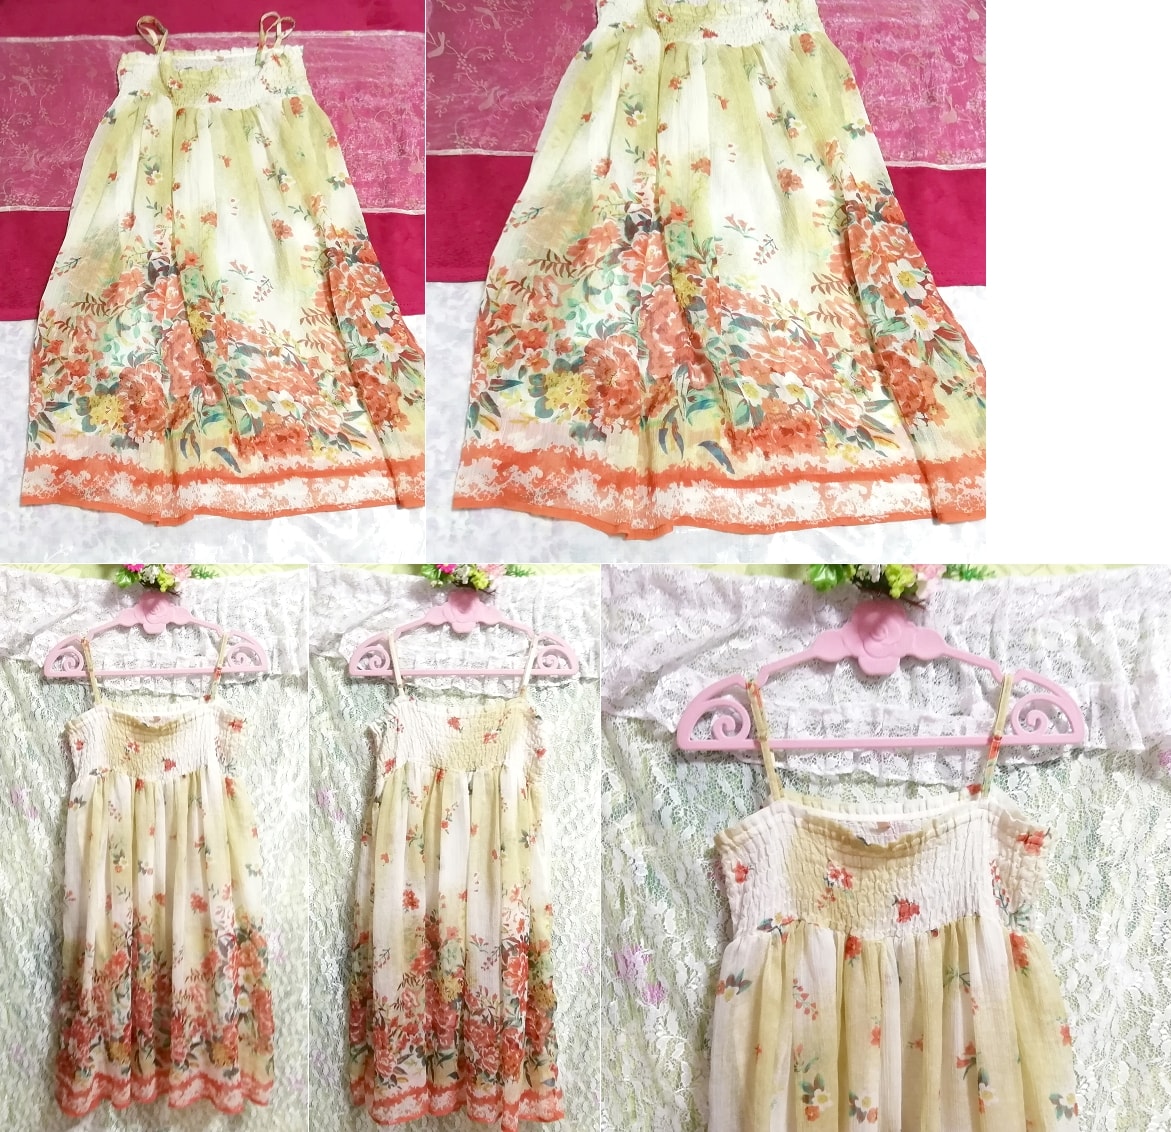 Vestido tipo camisola tipo negligee con estampado floral de lino y gasa hecho en la India, falda hasta la rodilla, talla m